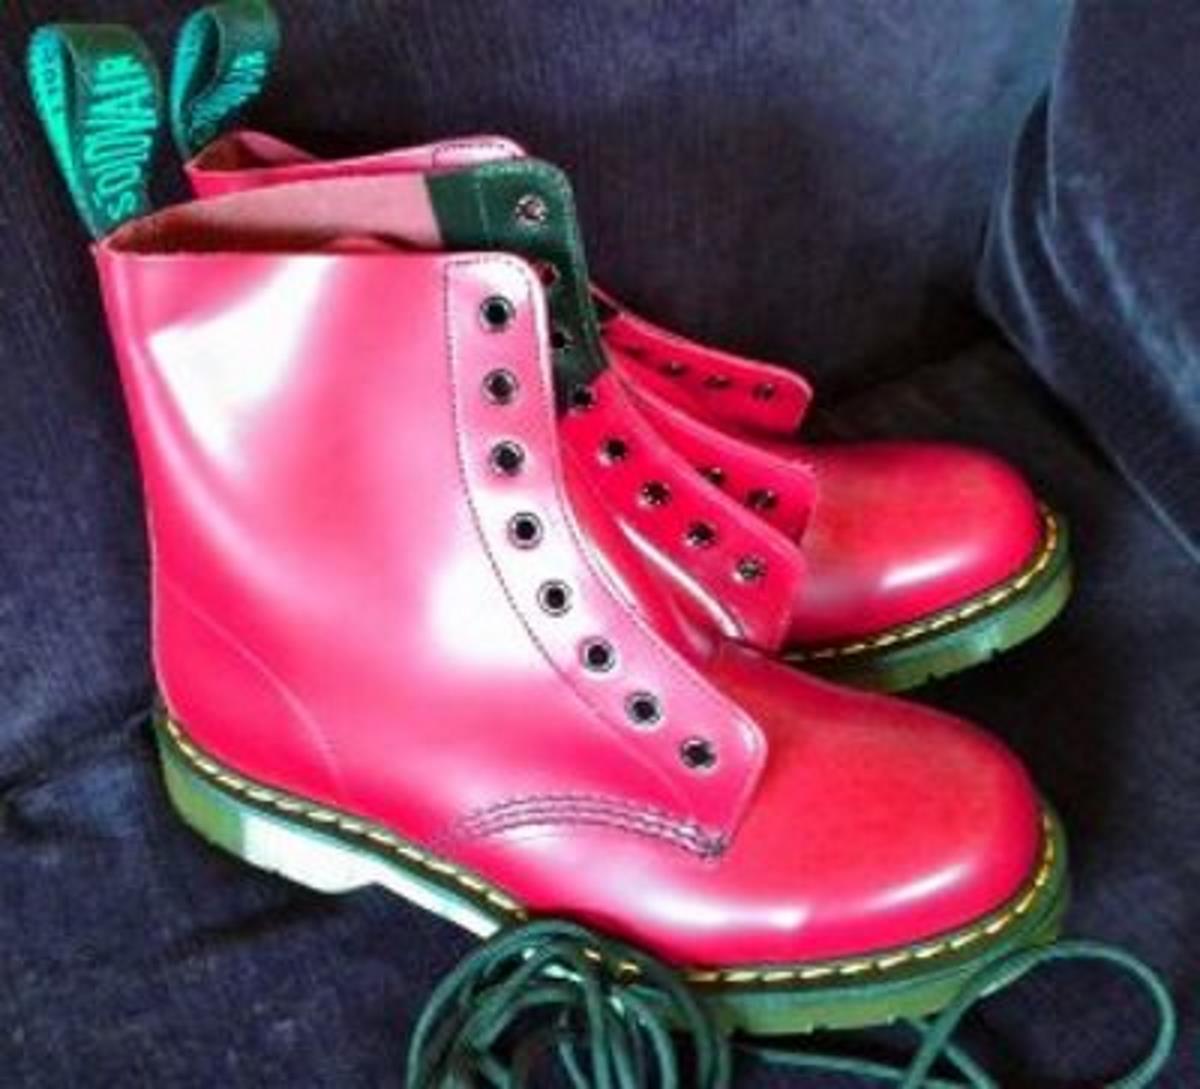 neon pink combat boots